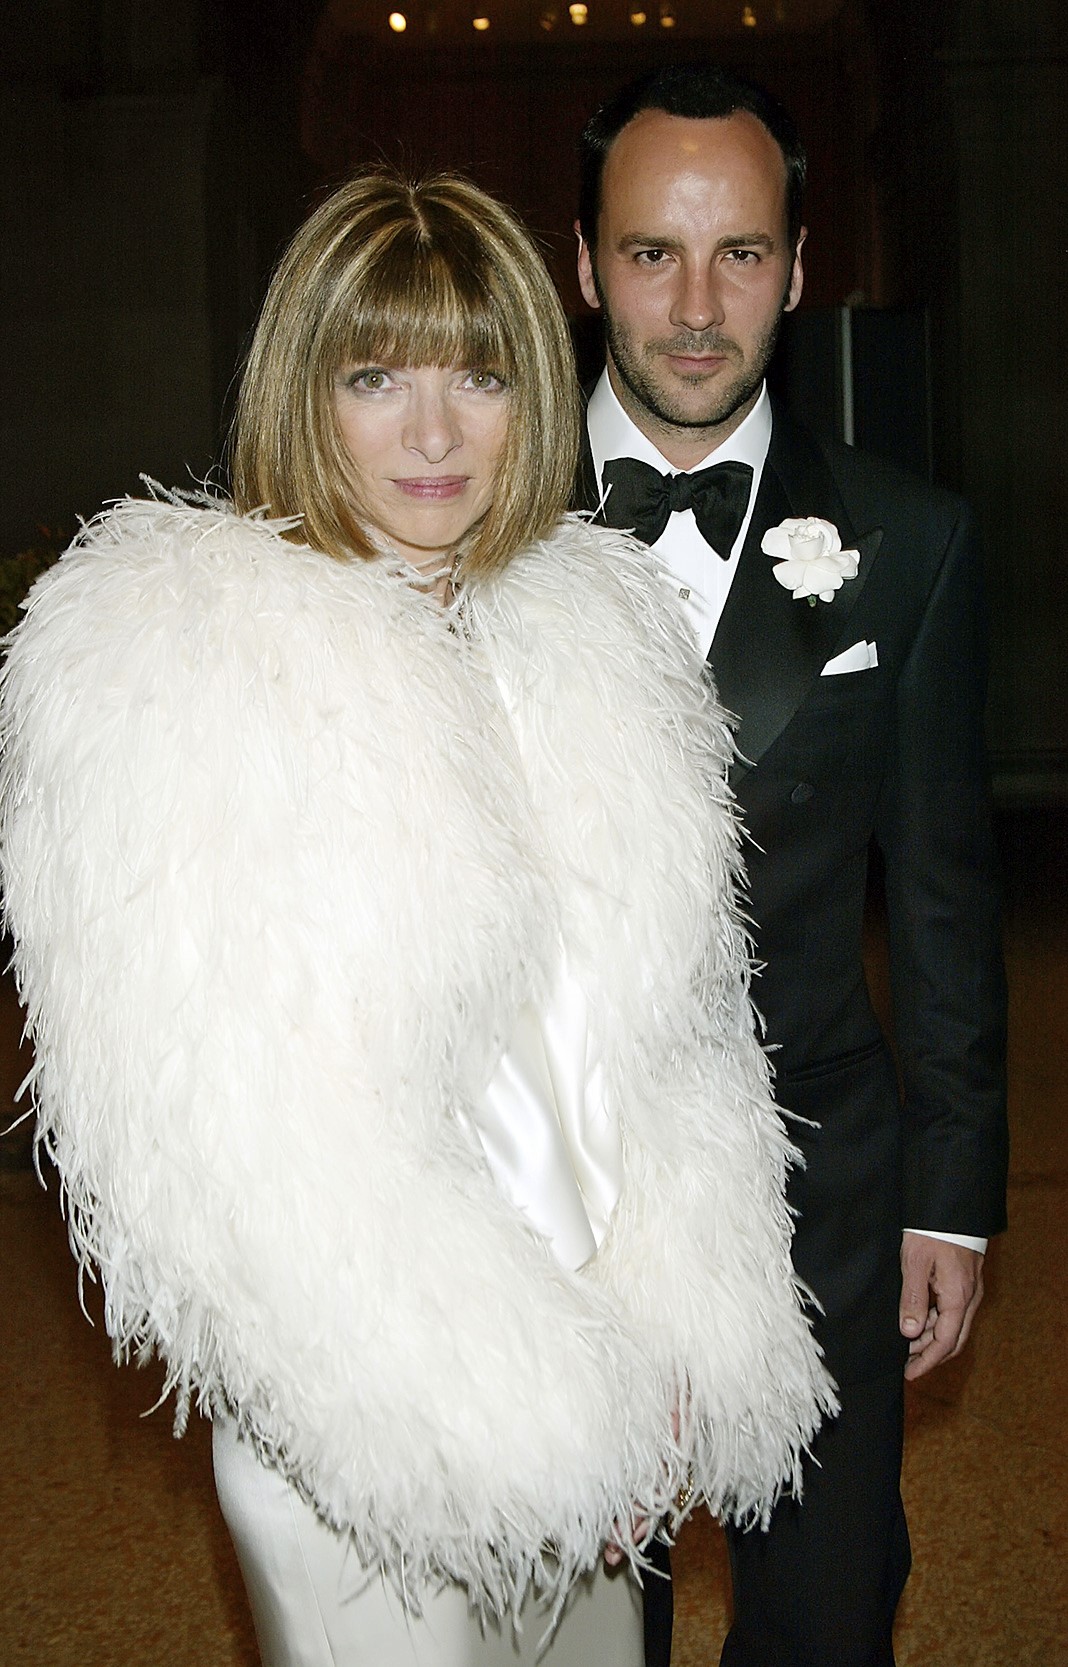 Редактор журнала Vogue Анна Винтур и модельер Том Форд на Costume Institute Benefit Gala, 28 апреля 2003 года в Нью-Йорке.